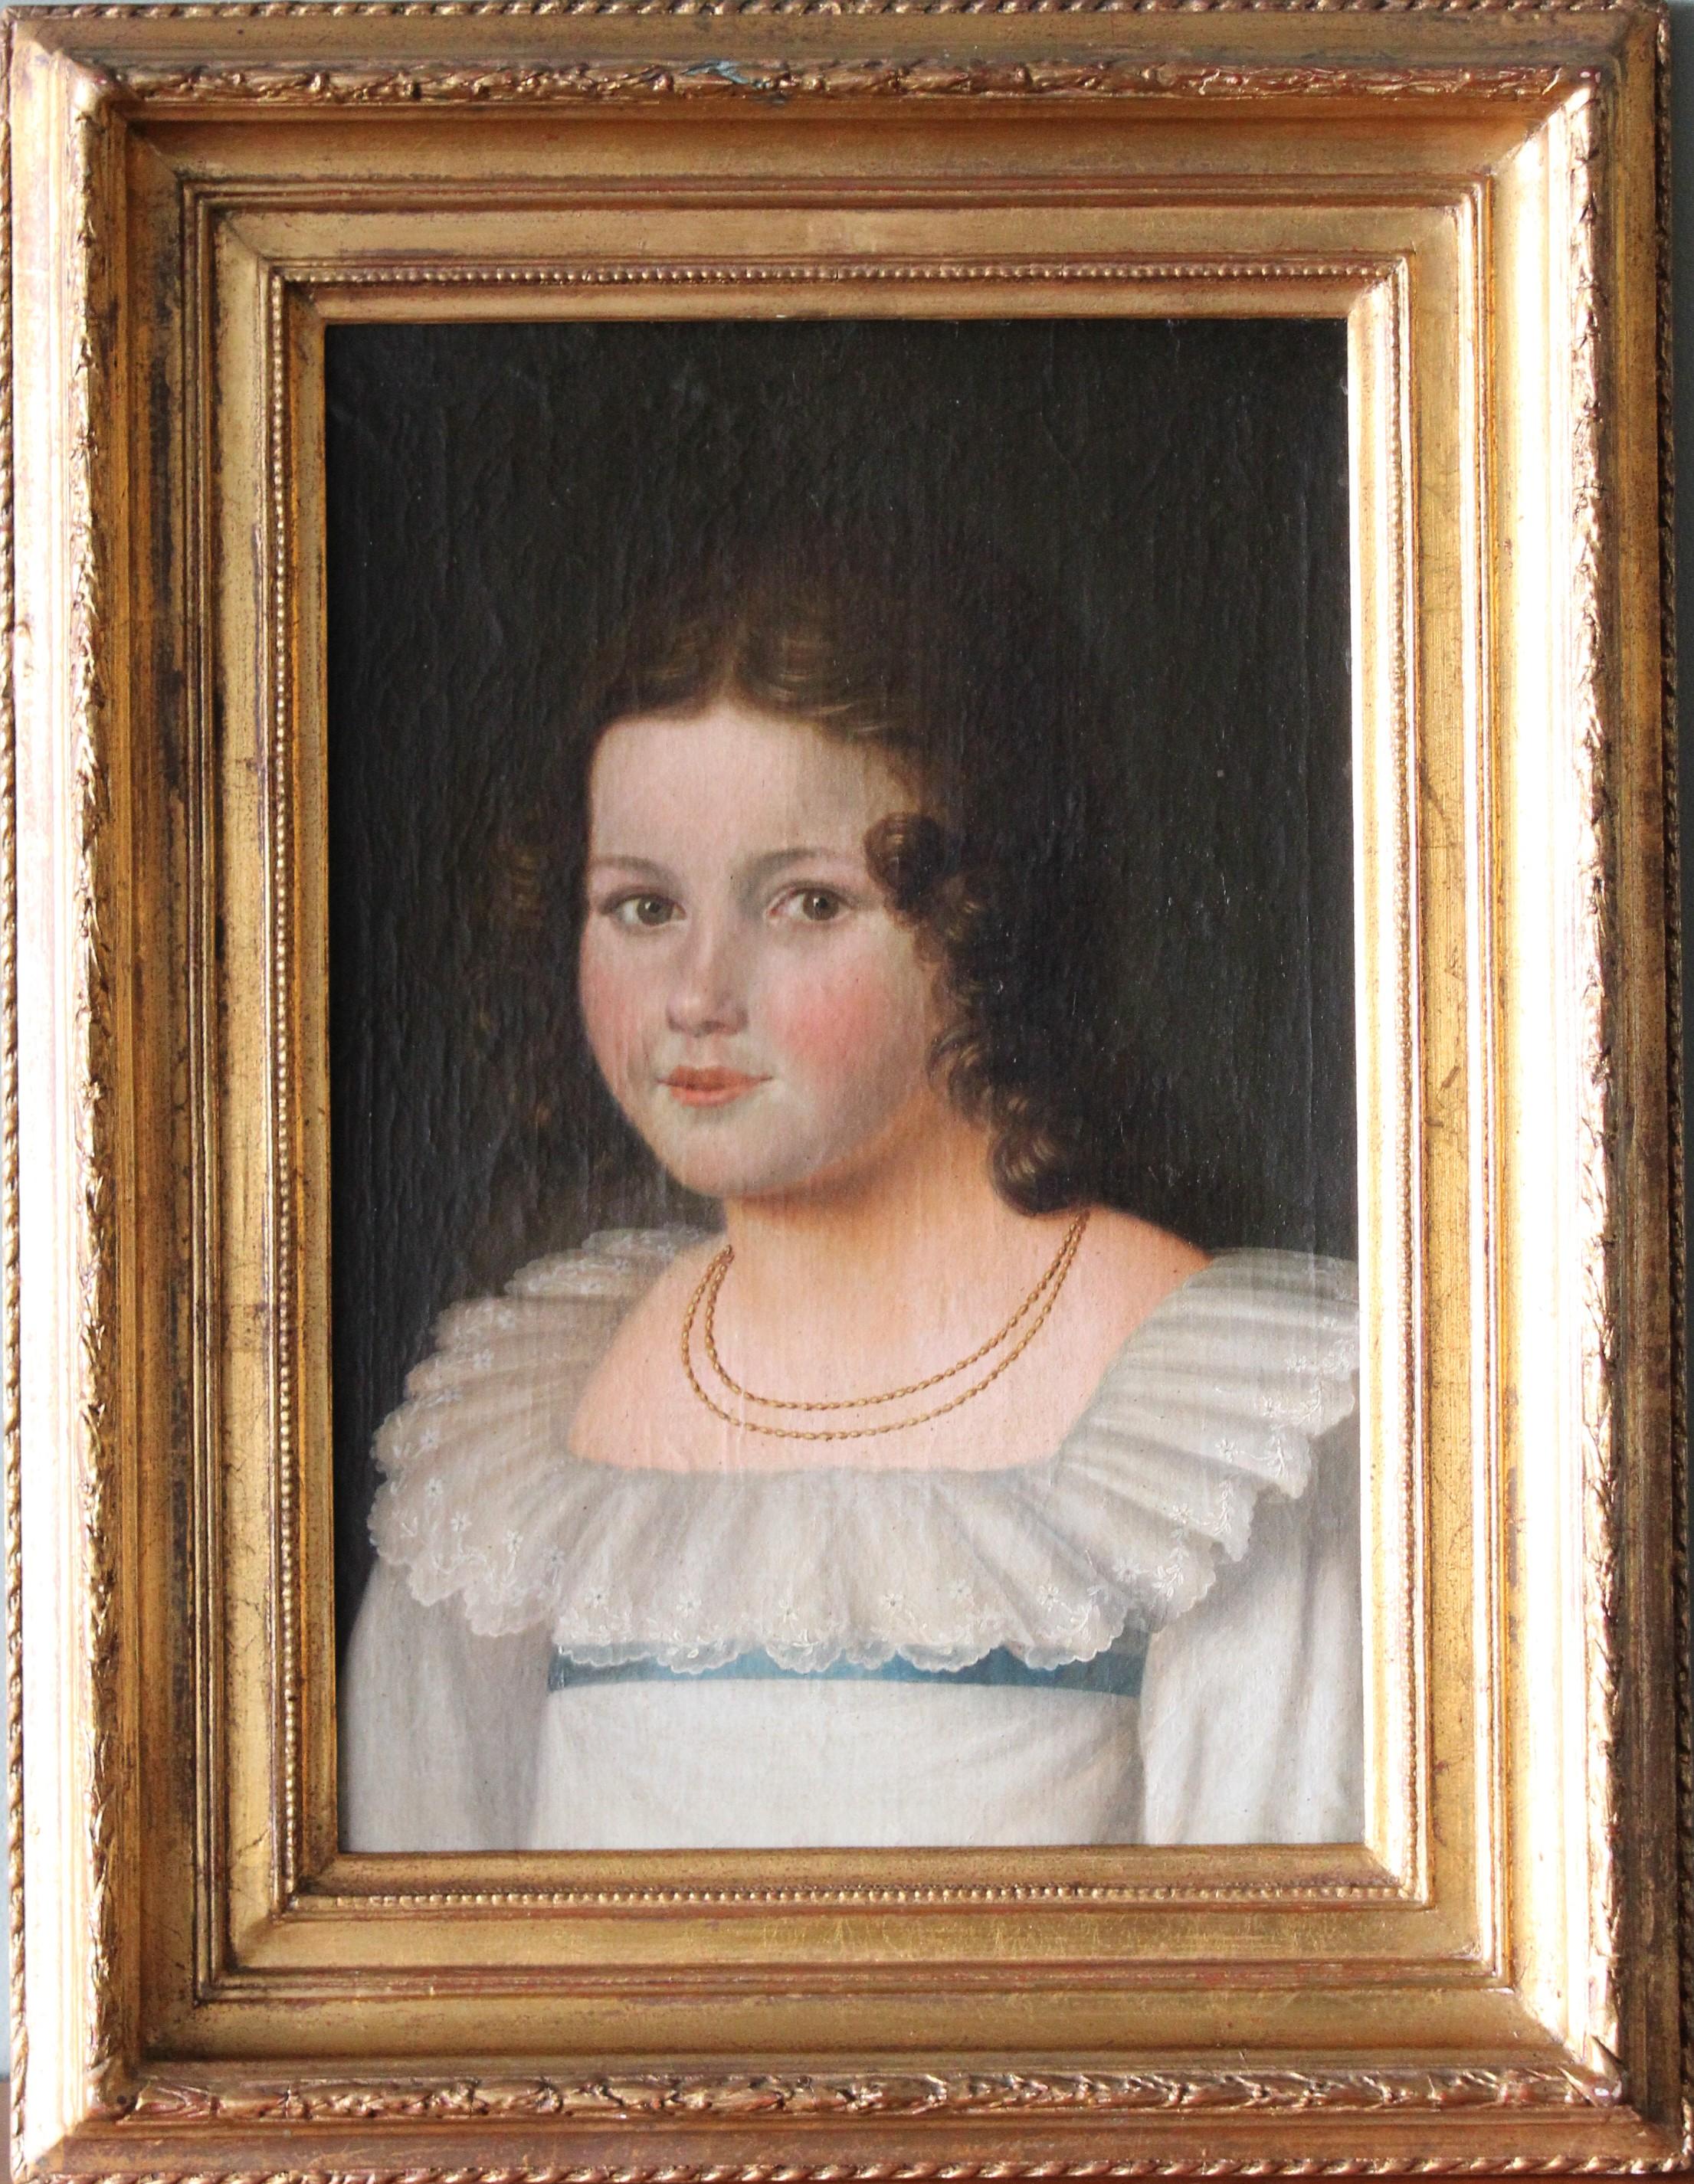 Antique portrait of a woman, French romantic oil painting, female portrait